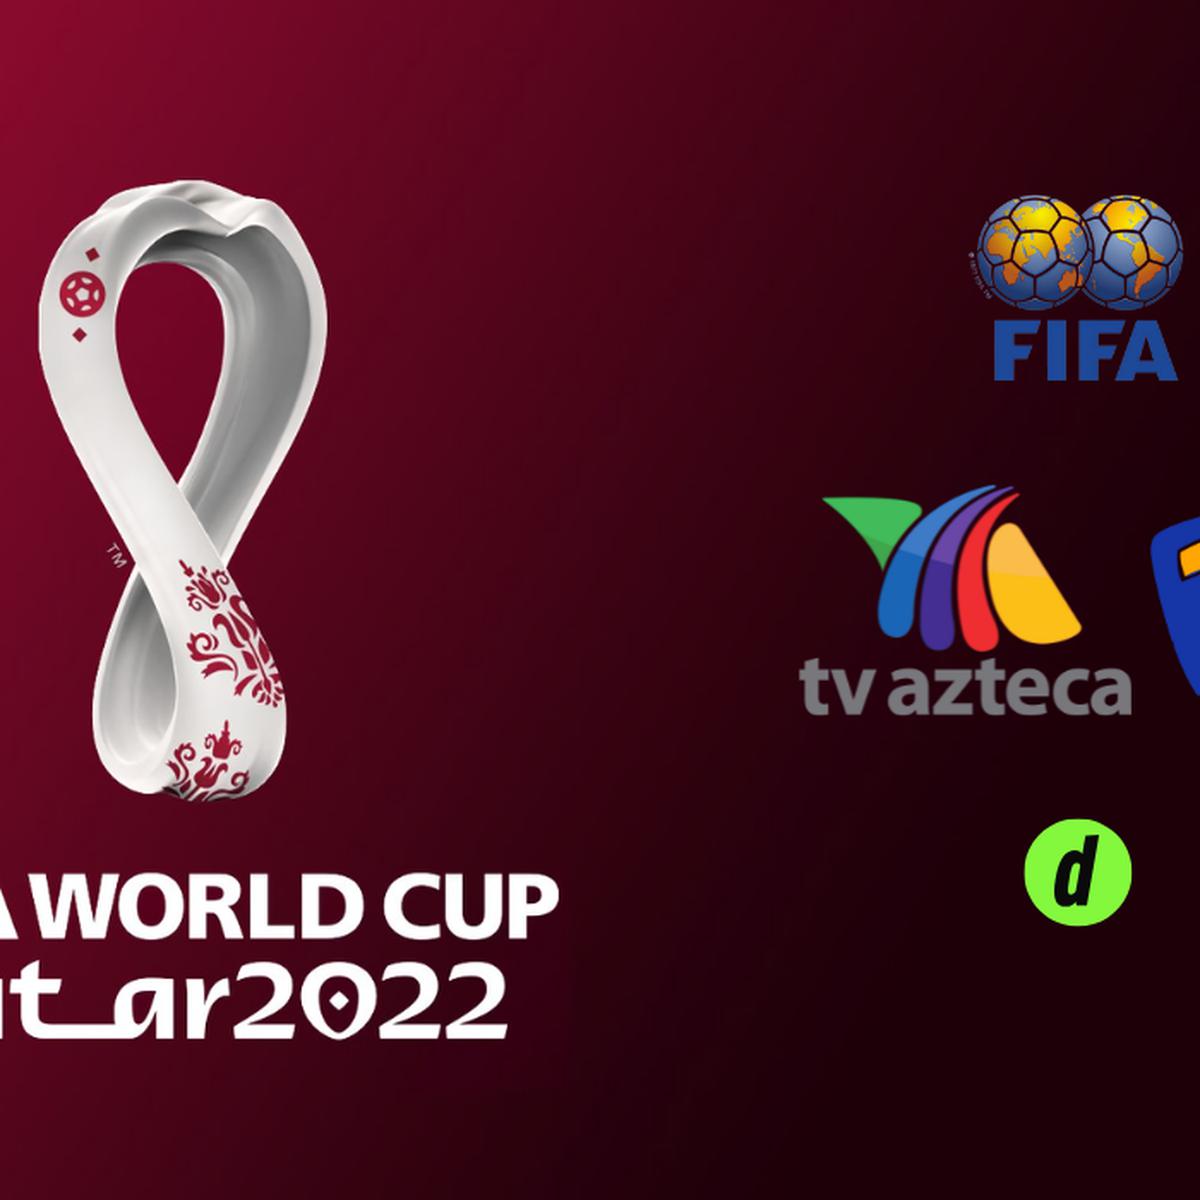 TV Azteca, cómo el de Qatar 2022 en México: partidos que pasará Azteca 7 | Programación de 64 partidos | Suscripción ¿Qué partidos transmite Azteca 7? | Programación | Suscripción TV Azteca | Selección Mexicana | MEXICO | DEPOR